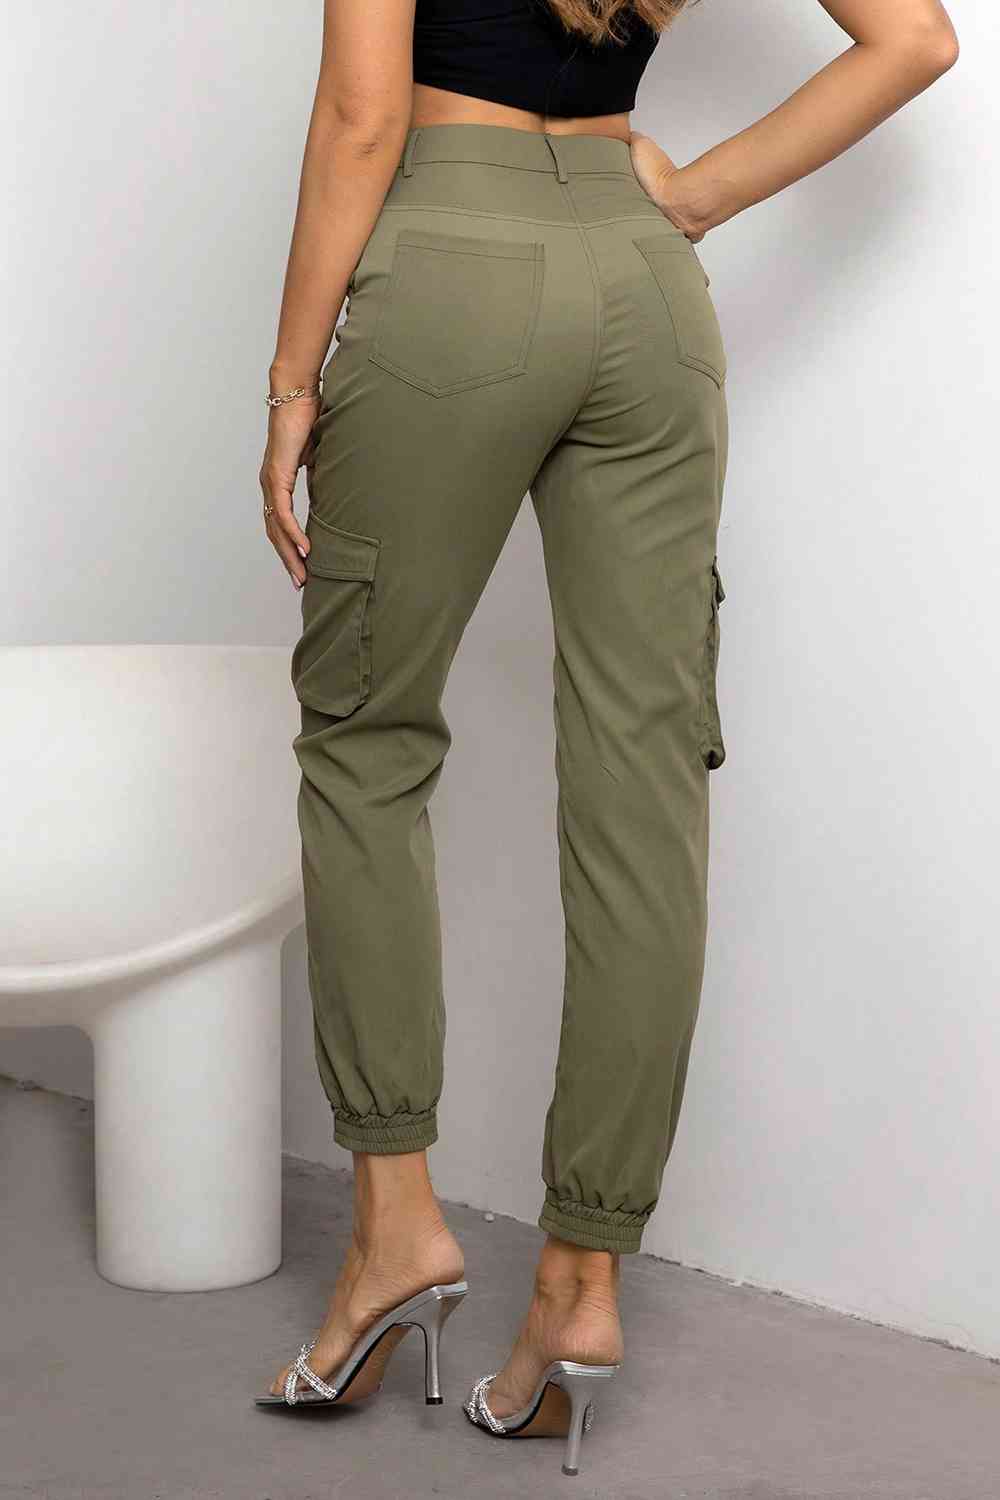 Matcha Green High Waist Cargo Pants